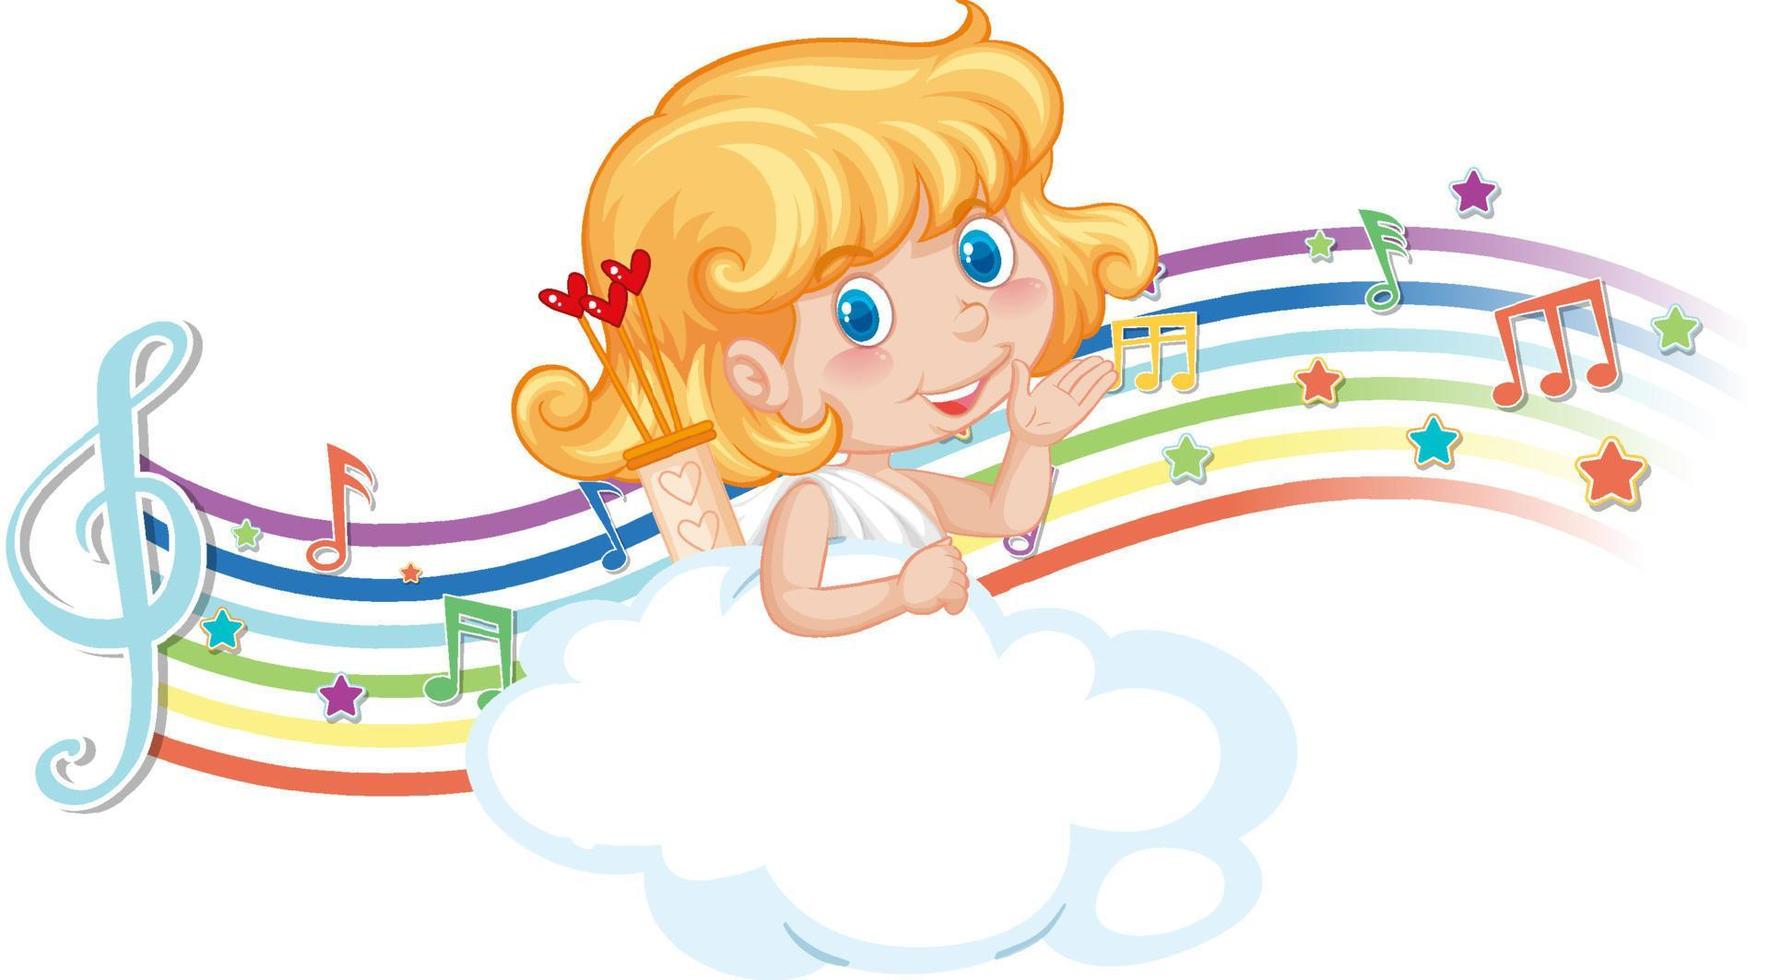 cupid flicka karaktär på molnet med melodisymboler på regnbågen vektor